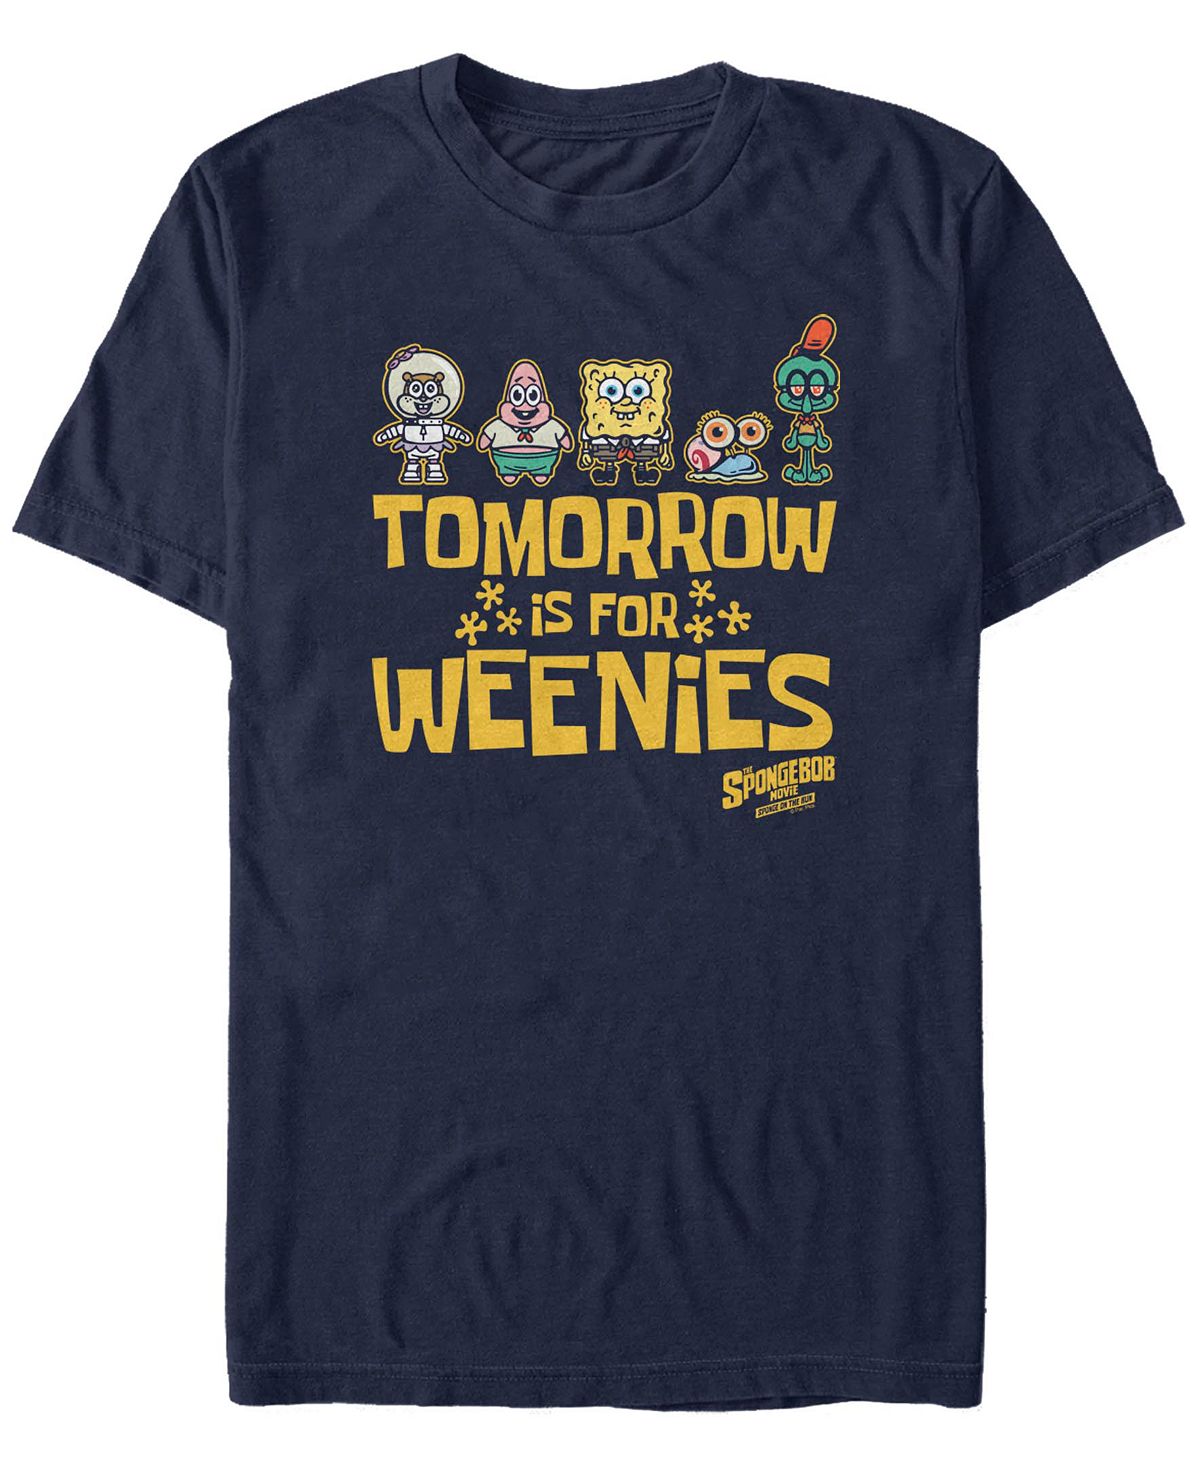 Мужская футболка is for weenies Fifth Sun, синий